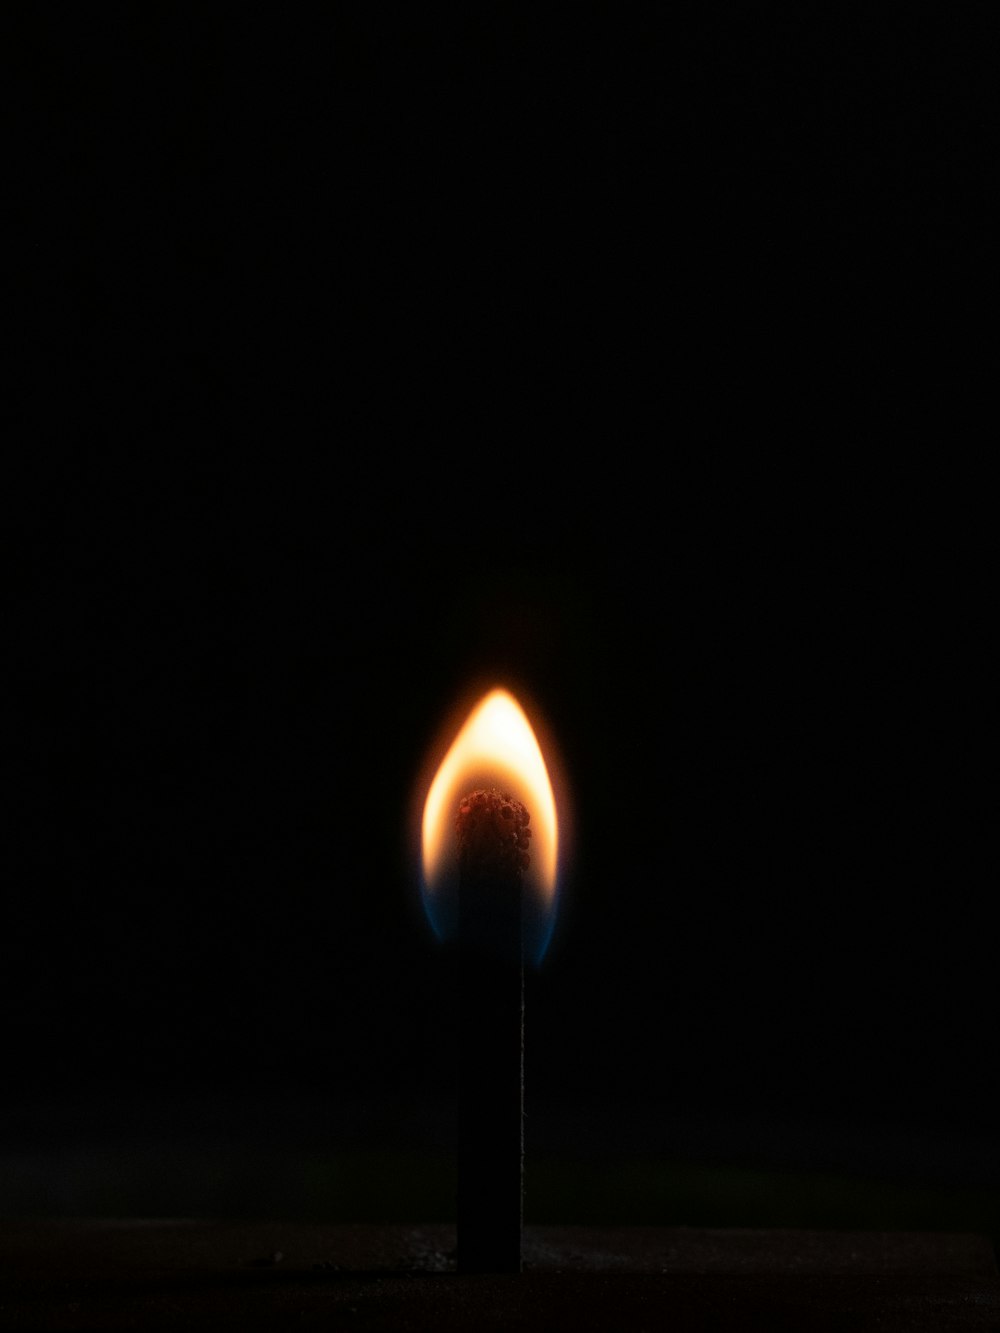 Una cerilla encendida en la oscuridad con un fondo negro